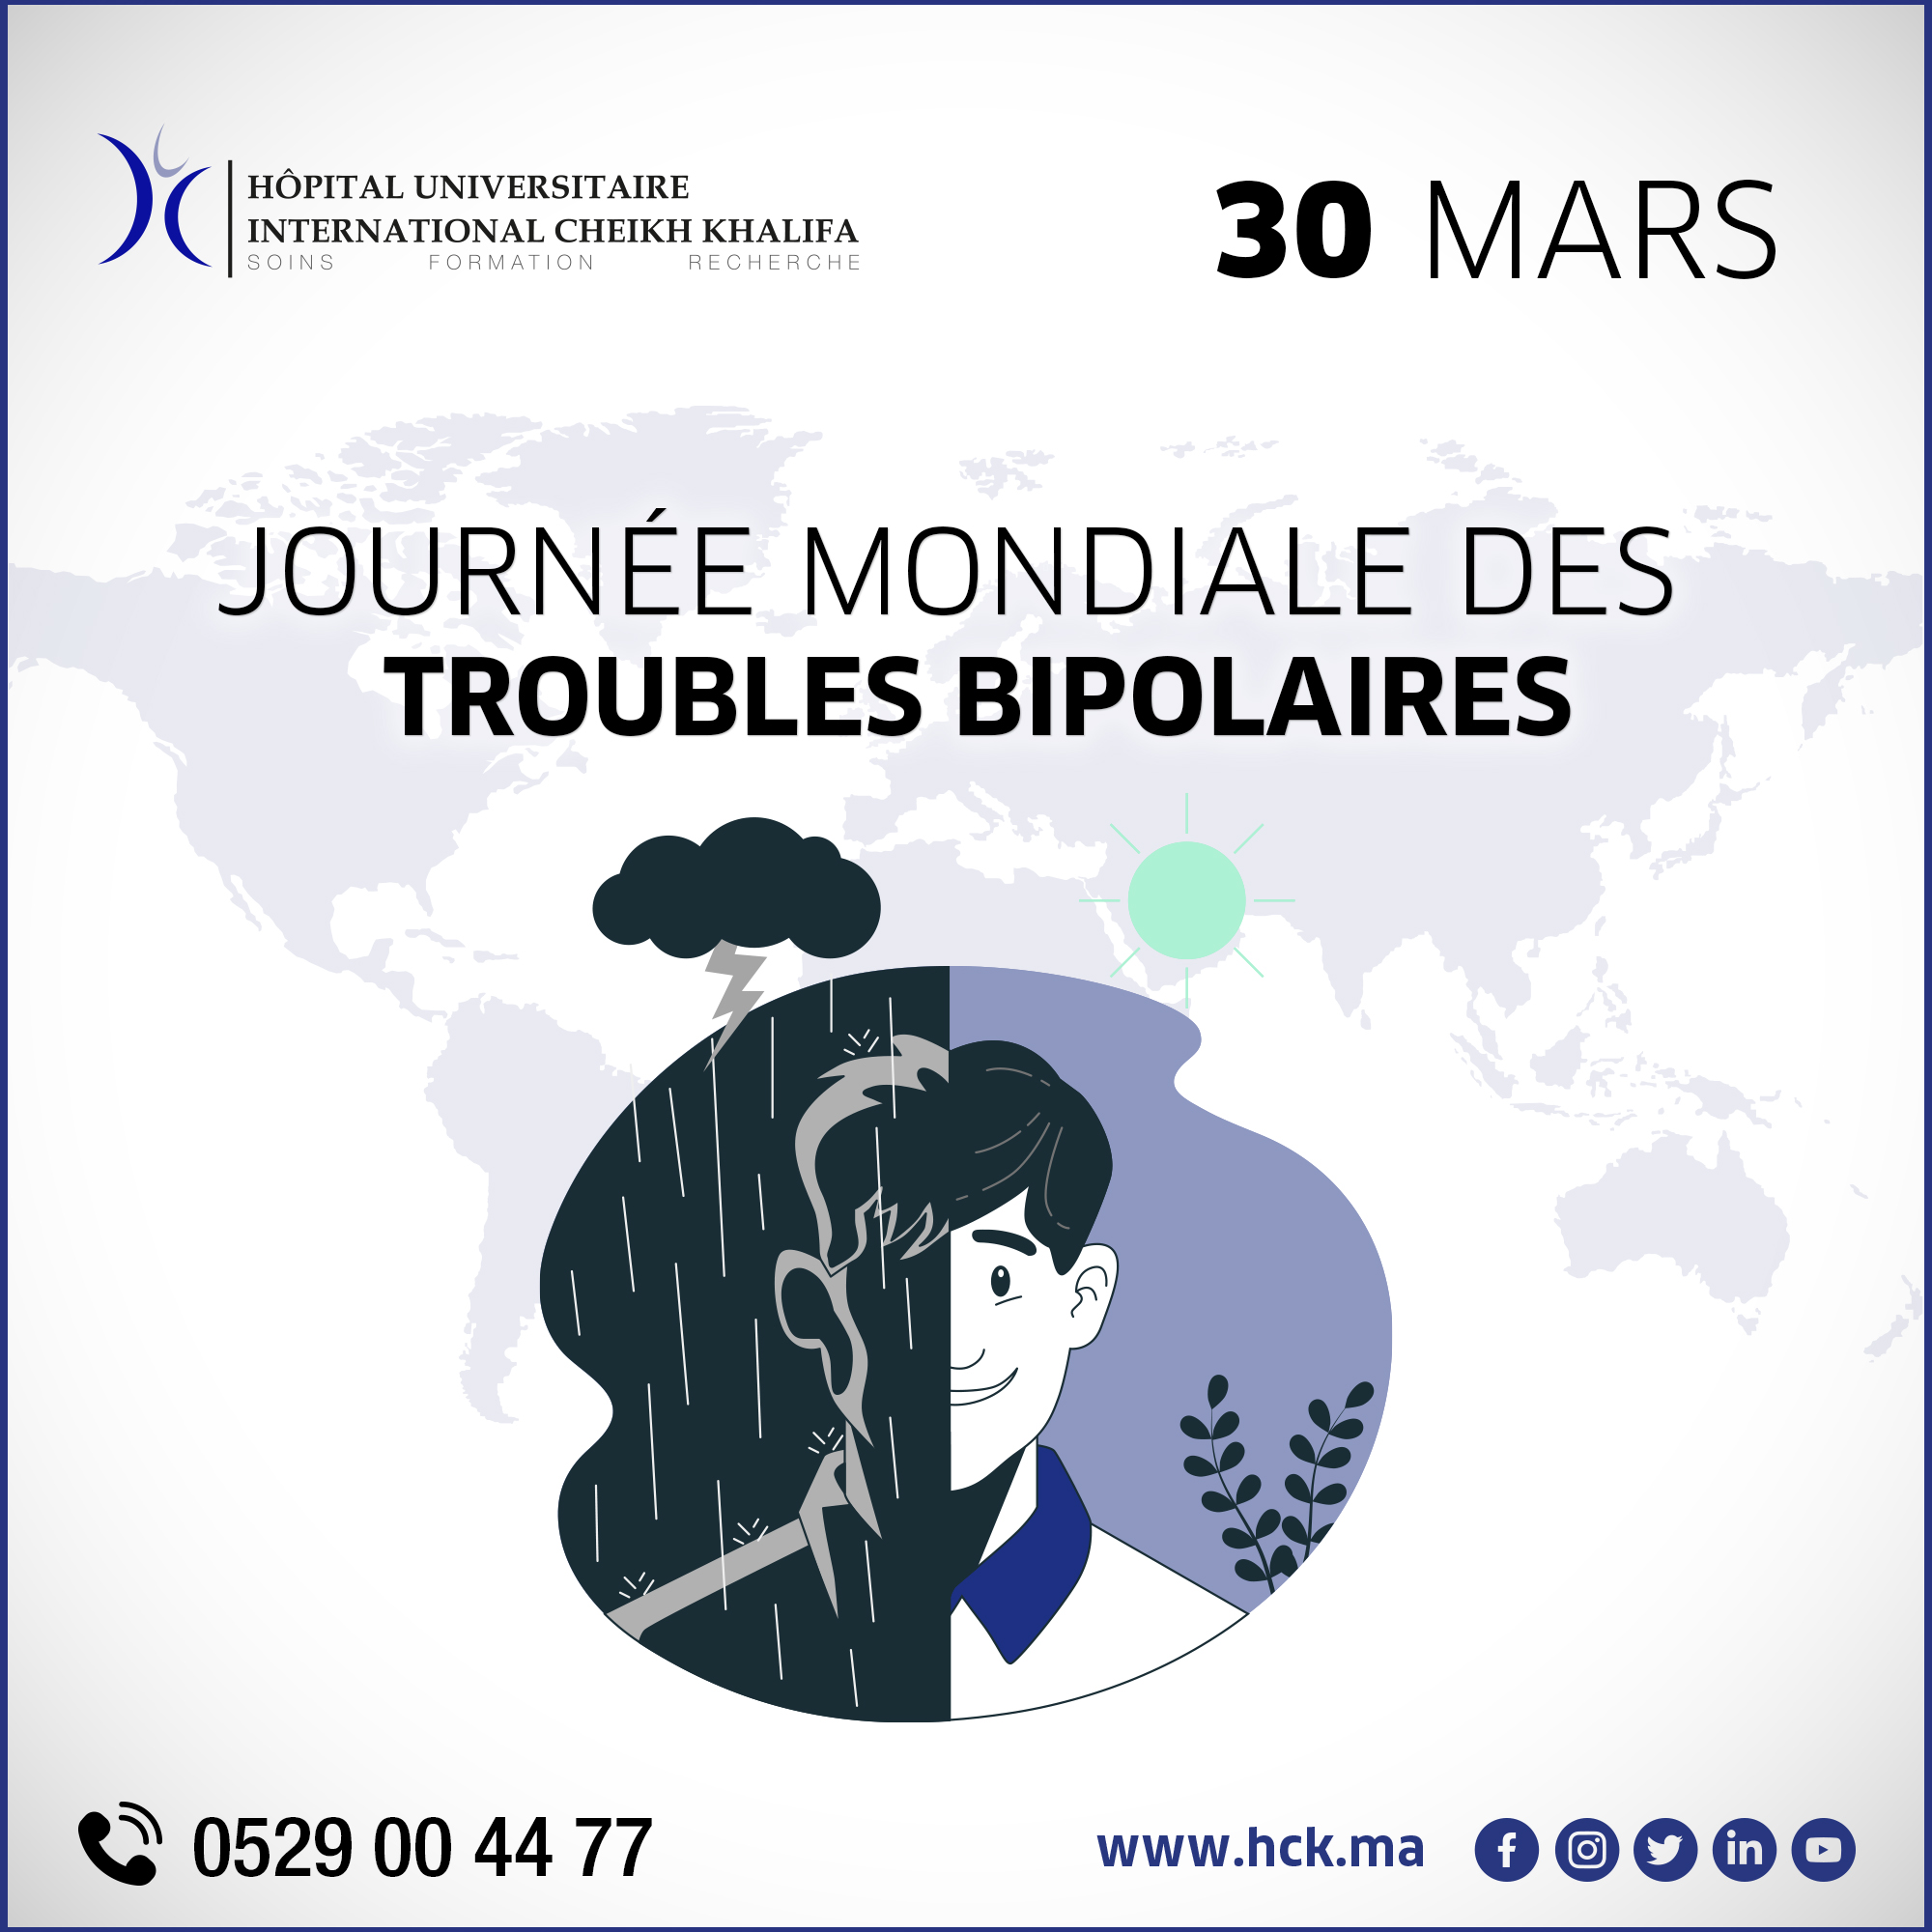 30 MARS : JOURNÉE MONDIALE DES TROUBLES BIPOLAIRES